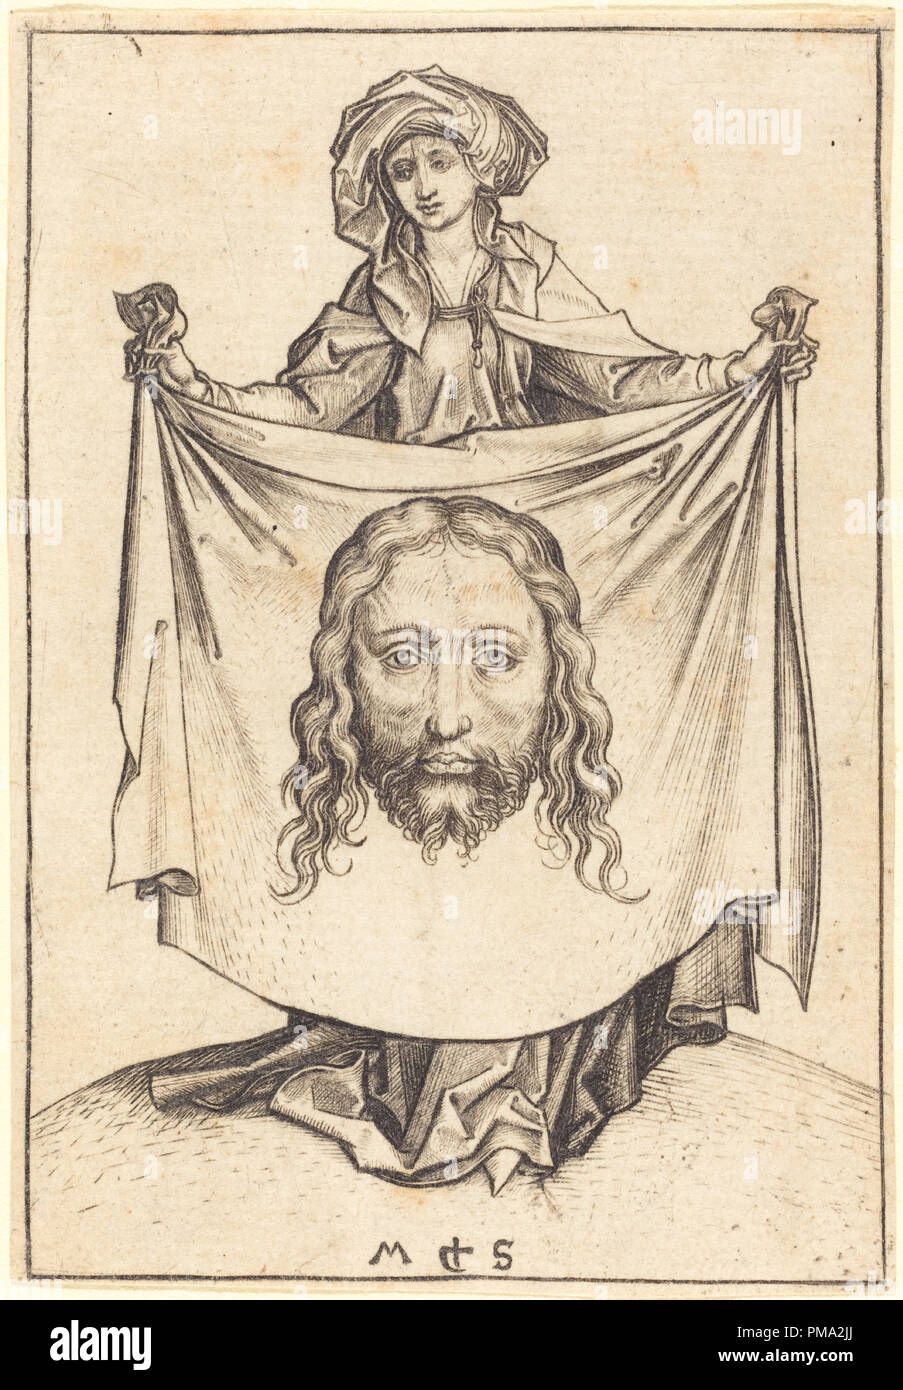 Saint Veronica. En date du : ch. 1480. Technique : gravure. Musée : National Gallery of Art, Washington DC. Auteur : Martin Schongauer. Banque D'Images